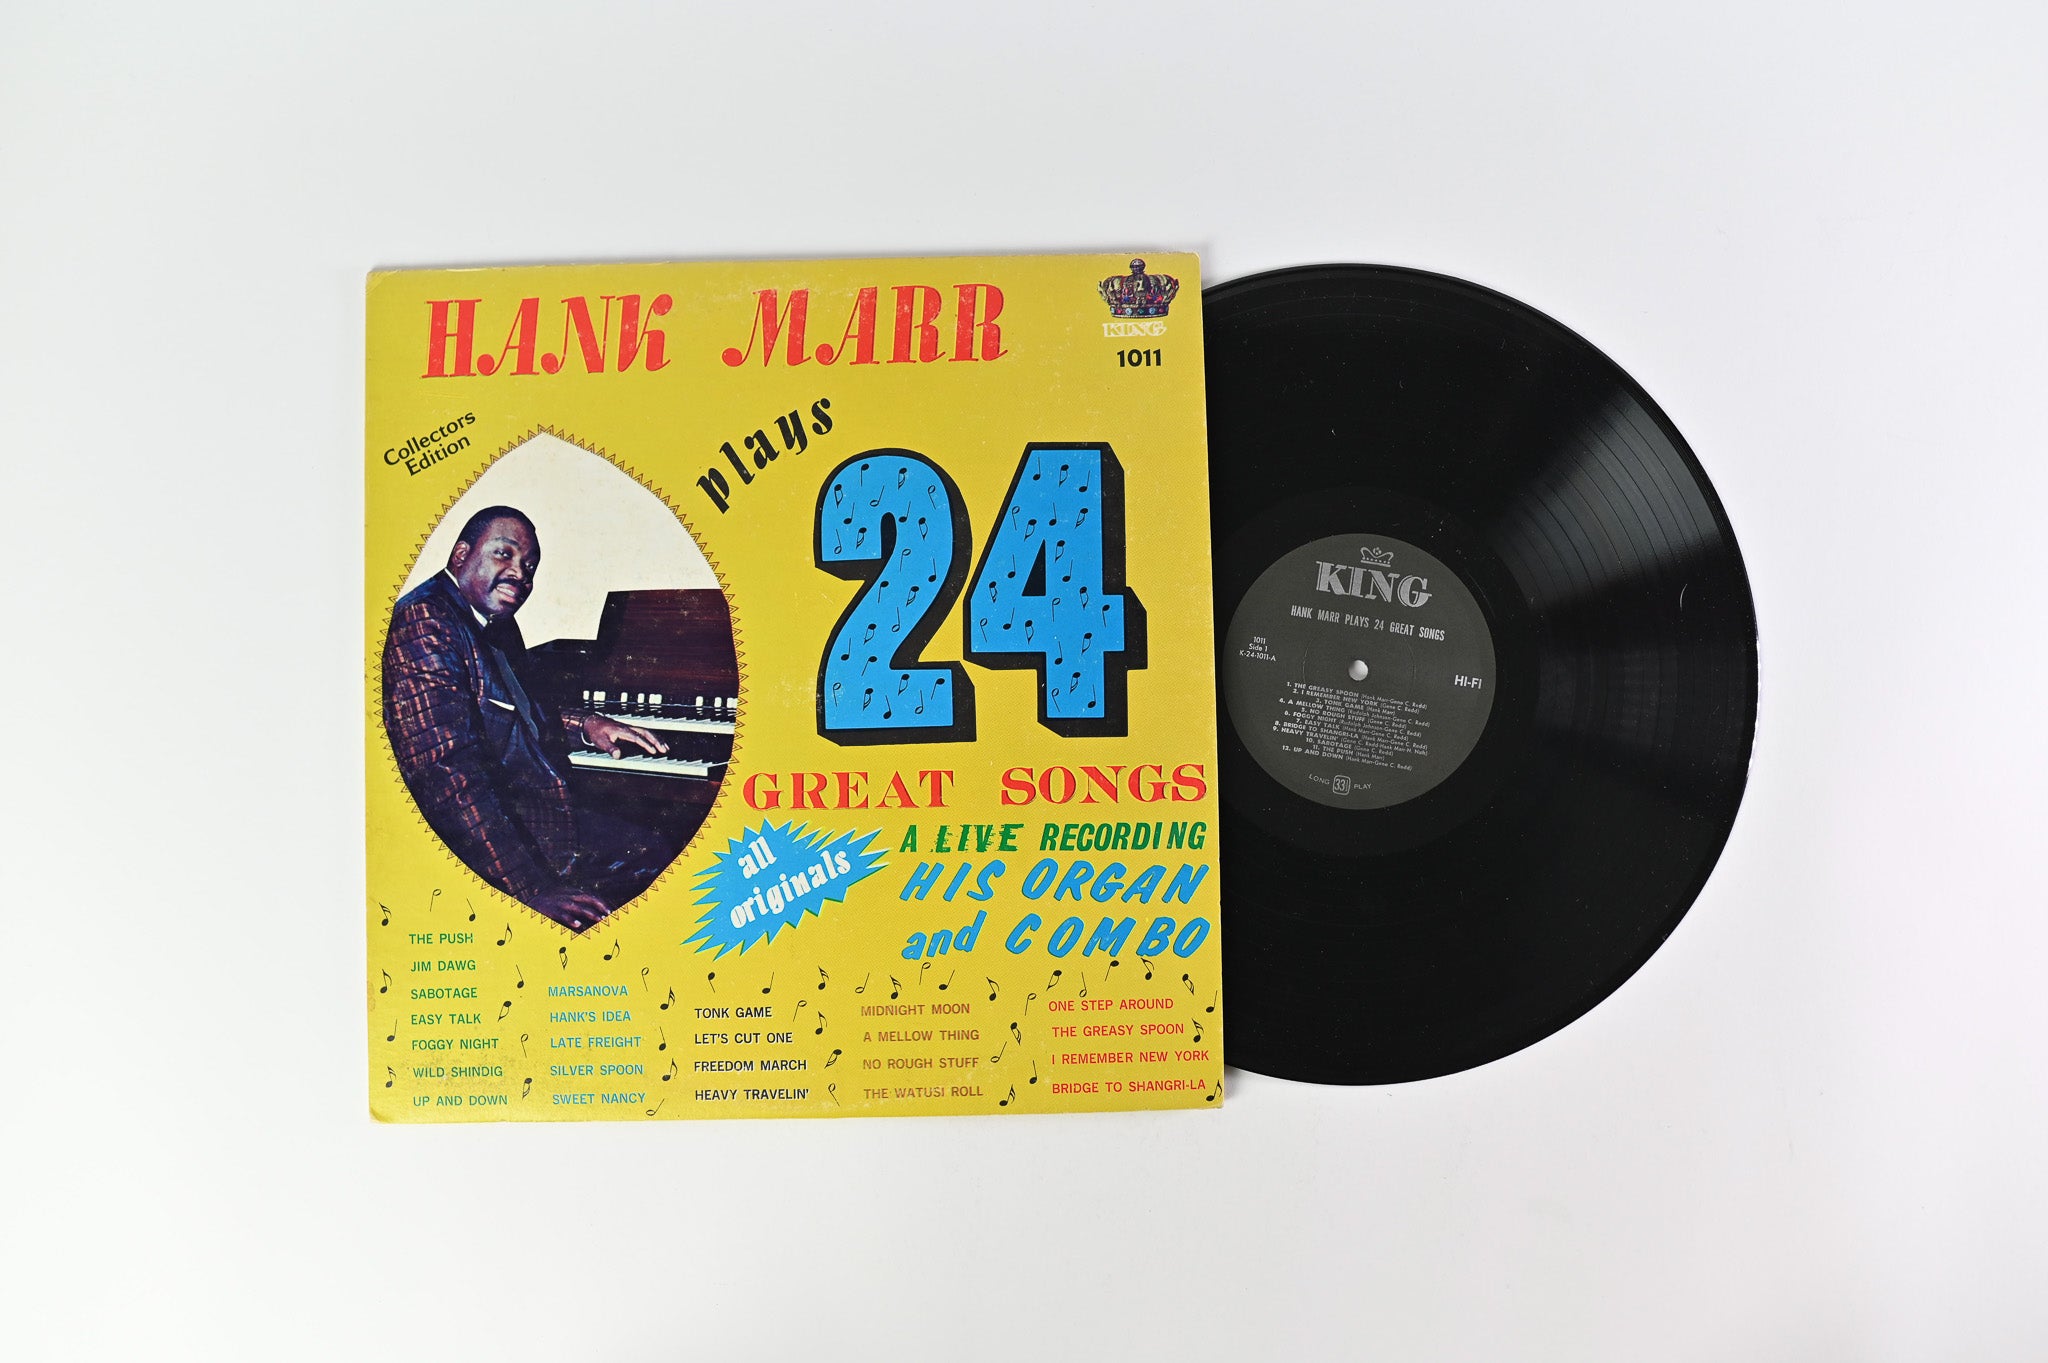 Hank Marr – Hank Marr Plays 24 Great Songs on King